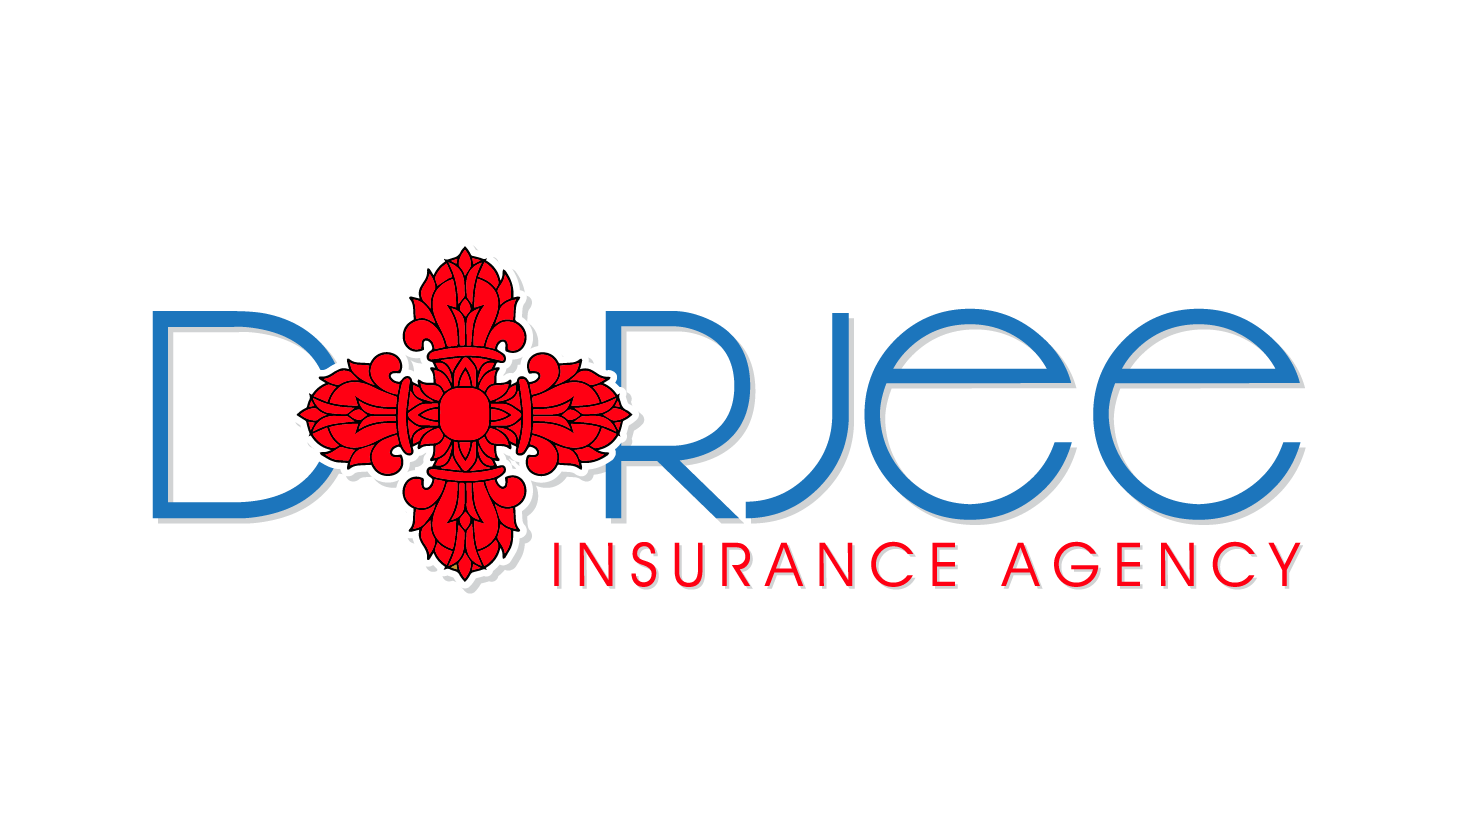 Dorjee Insurance Agency